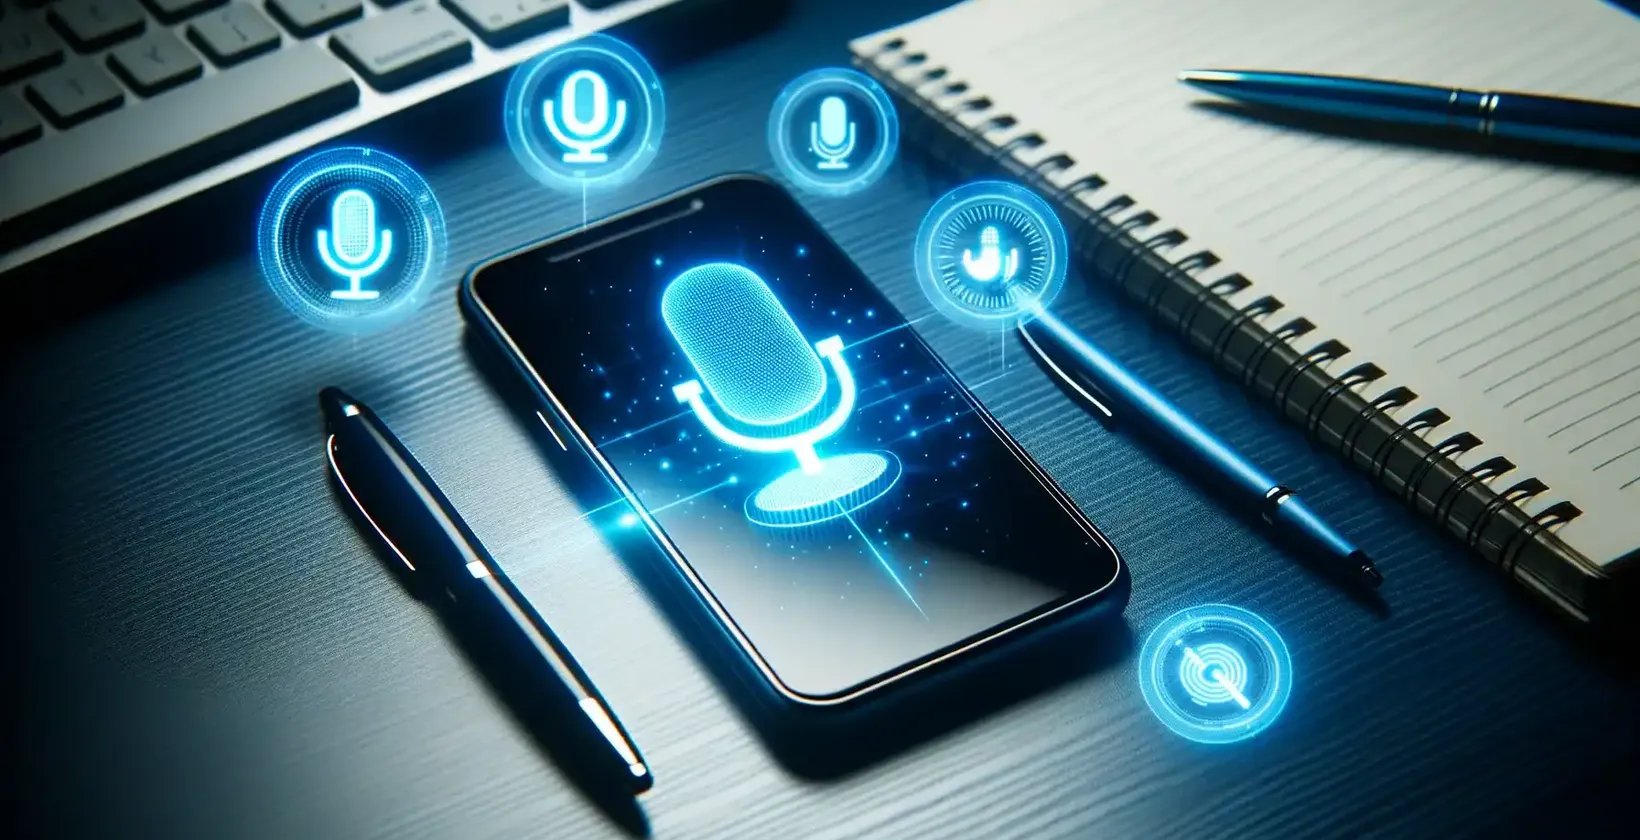 Teksti lisamine Samsungi seadmete videole, mida illustreerib Samsungi nutitelefon, mis kuvab laual häälkäskluste sümboleid